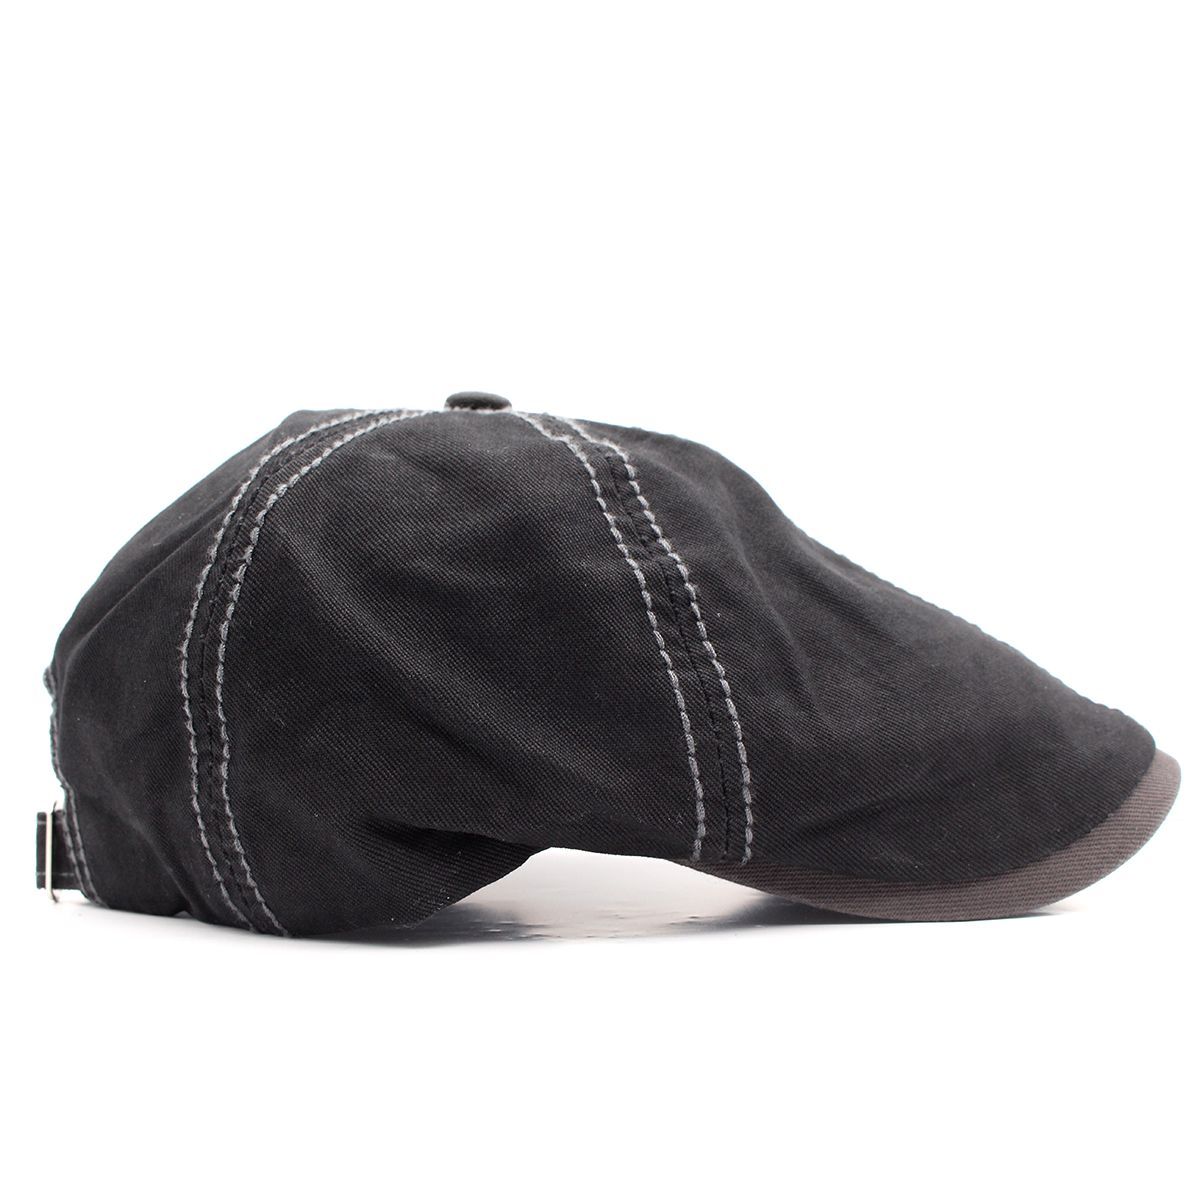 キャスケット帽 インパクトワッペンデザイン 無地 綿キャップ 帽子 56cm~60cm KC49-1